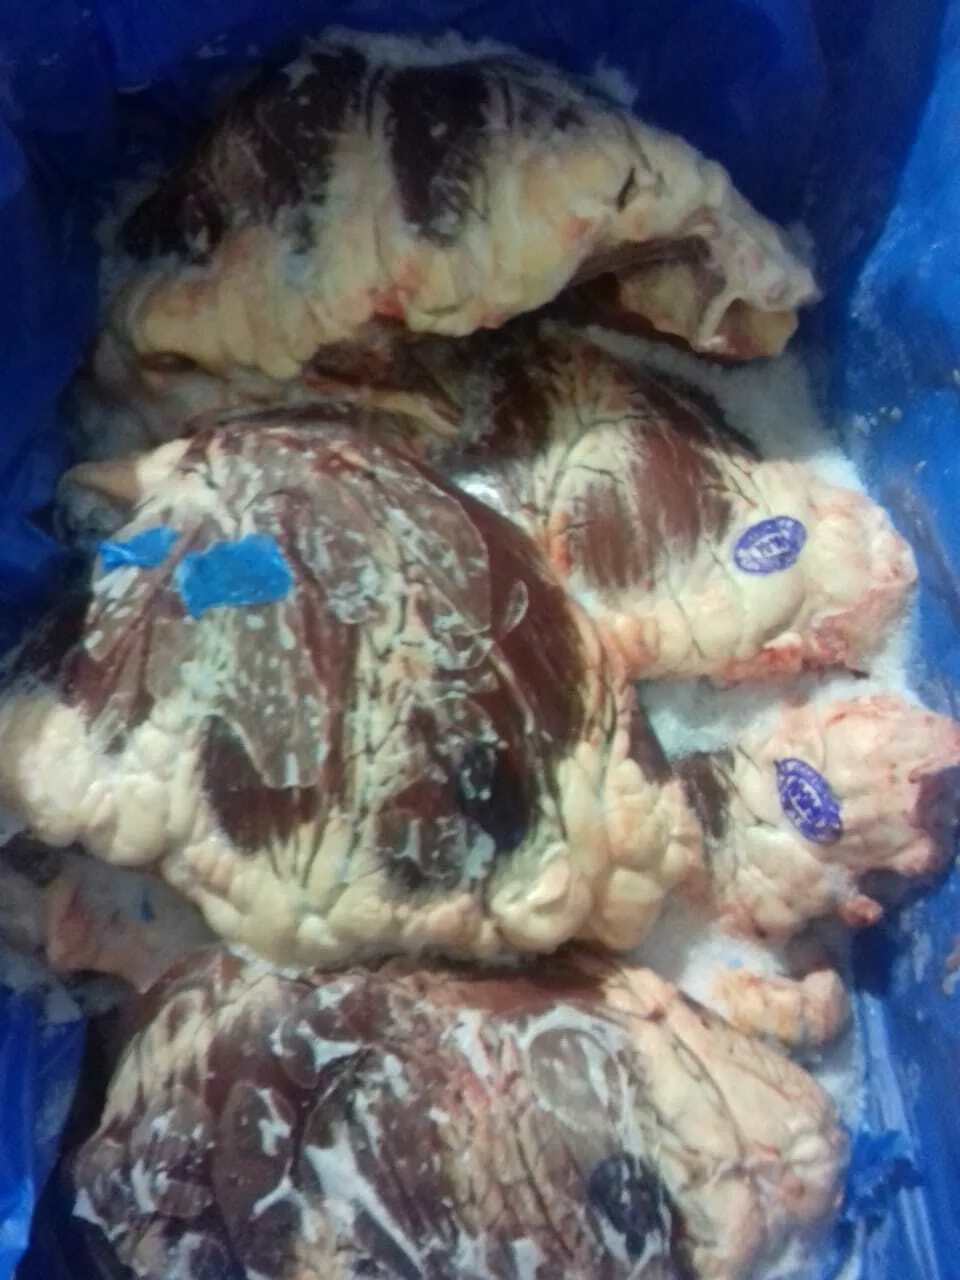 мясо говядины односорт халяль в Казани и Республике Татарстан 3